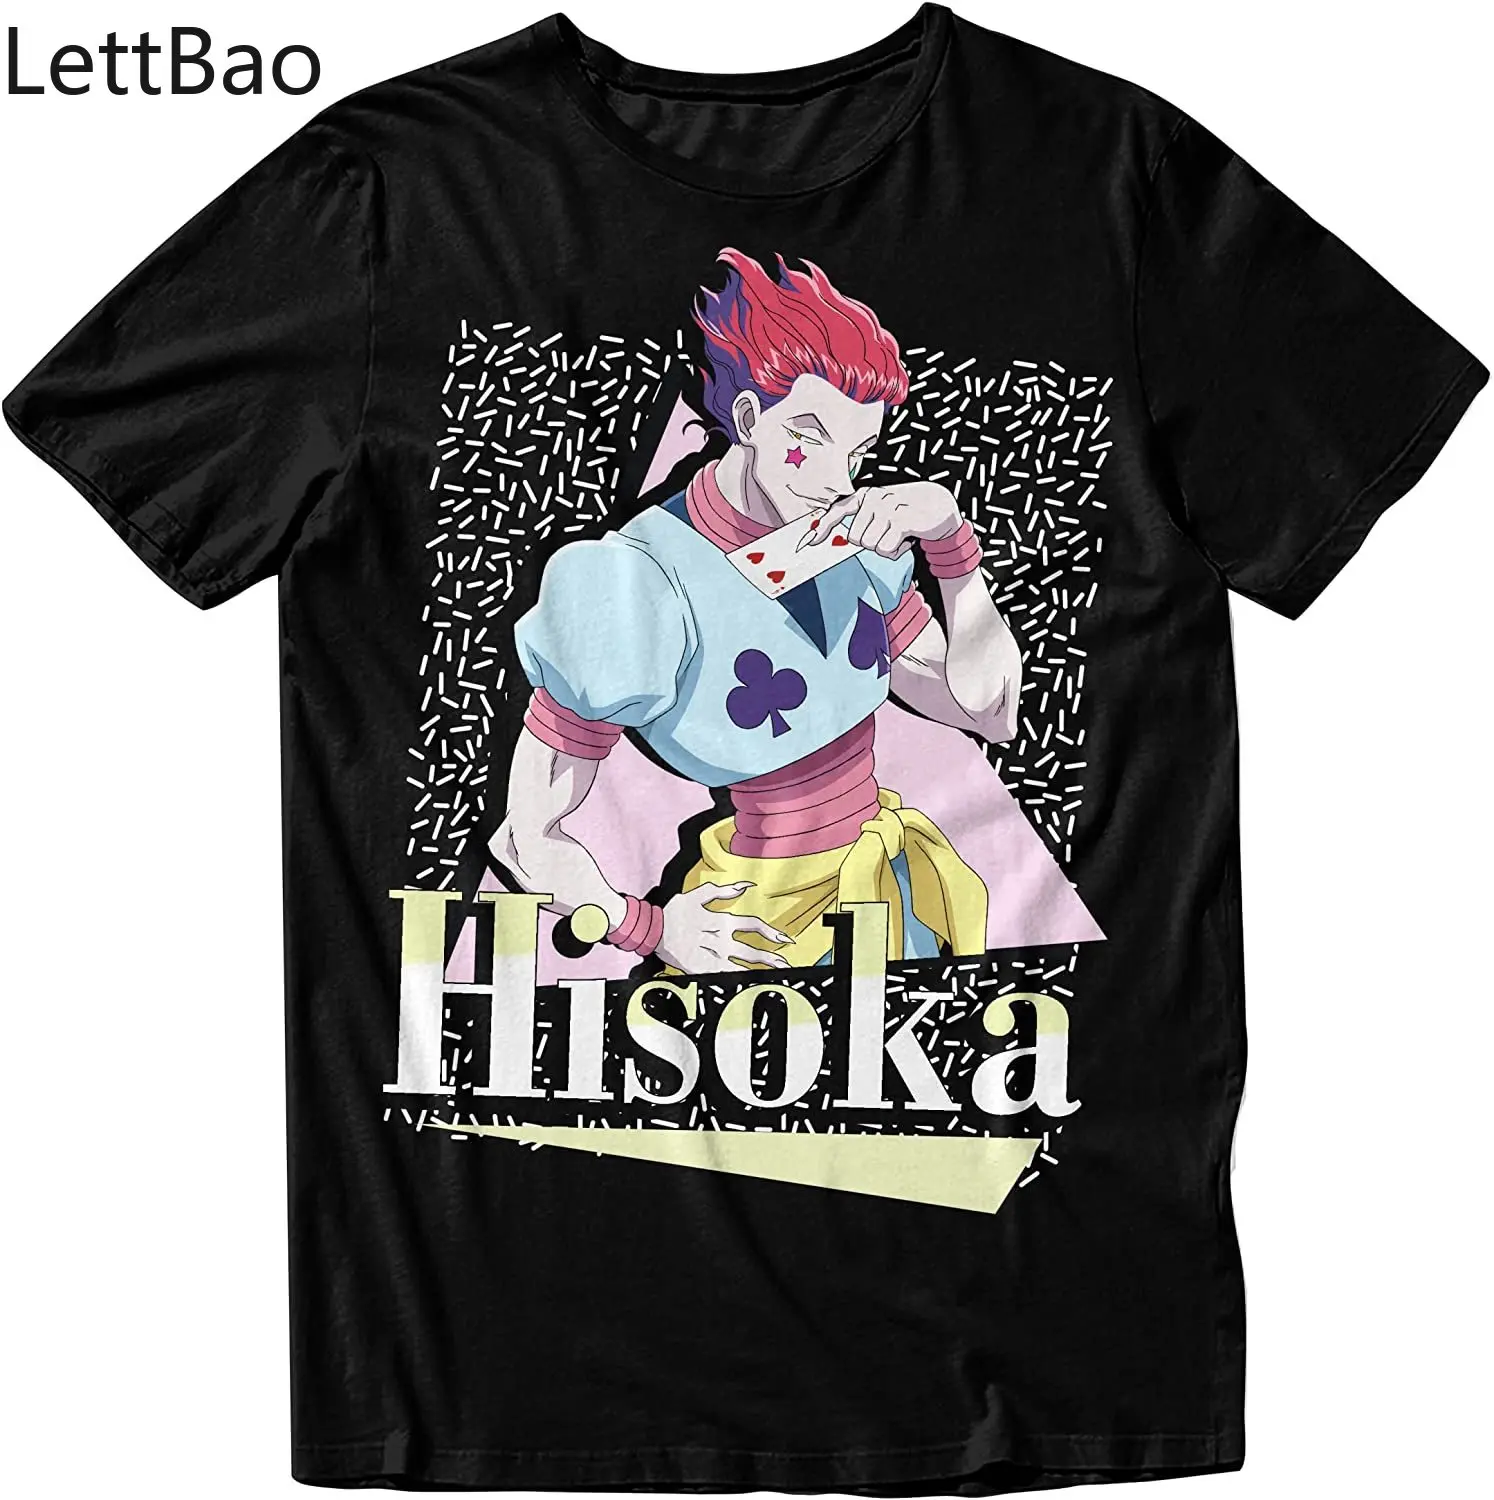 

Hunter X Hunter Anime Character Gon Freecss Killua Hisoka Men’s Black T-Shirt Harajuku Graphic T-Shirt Loose Streetwear Unisex